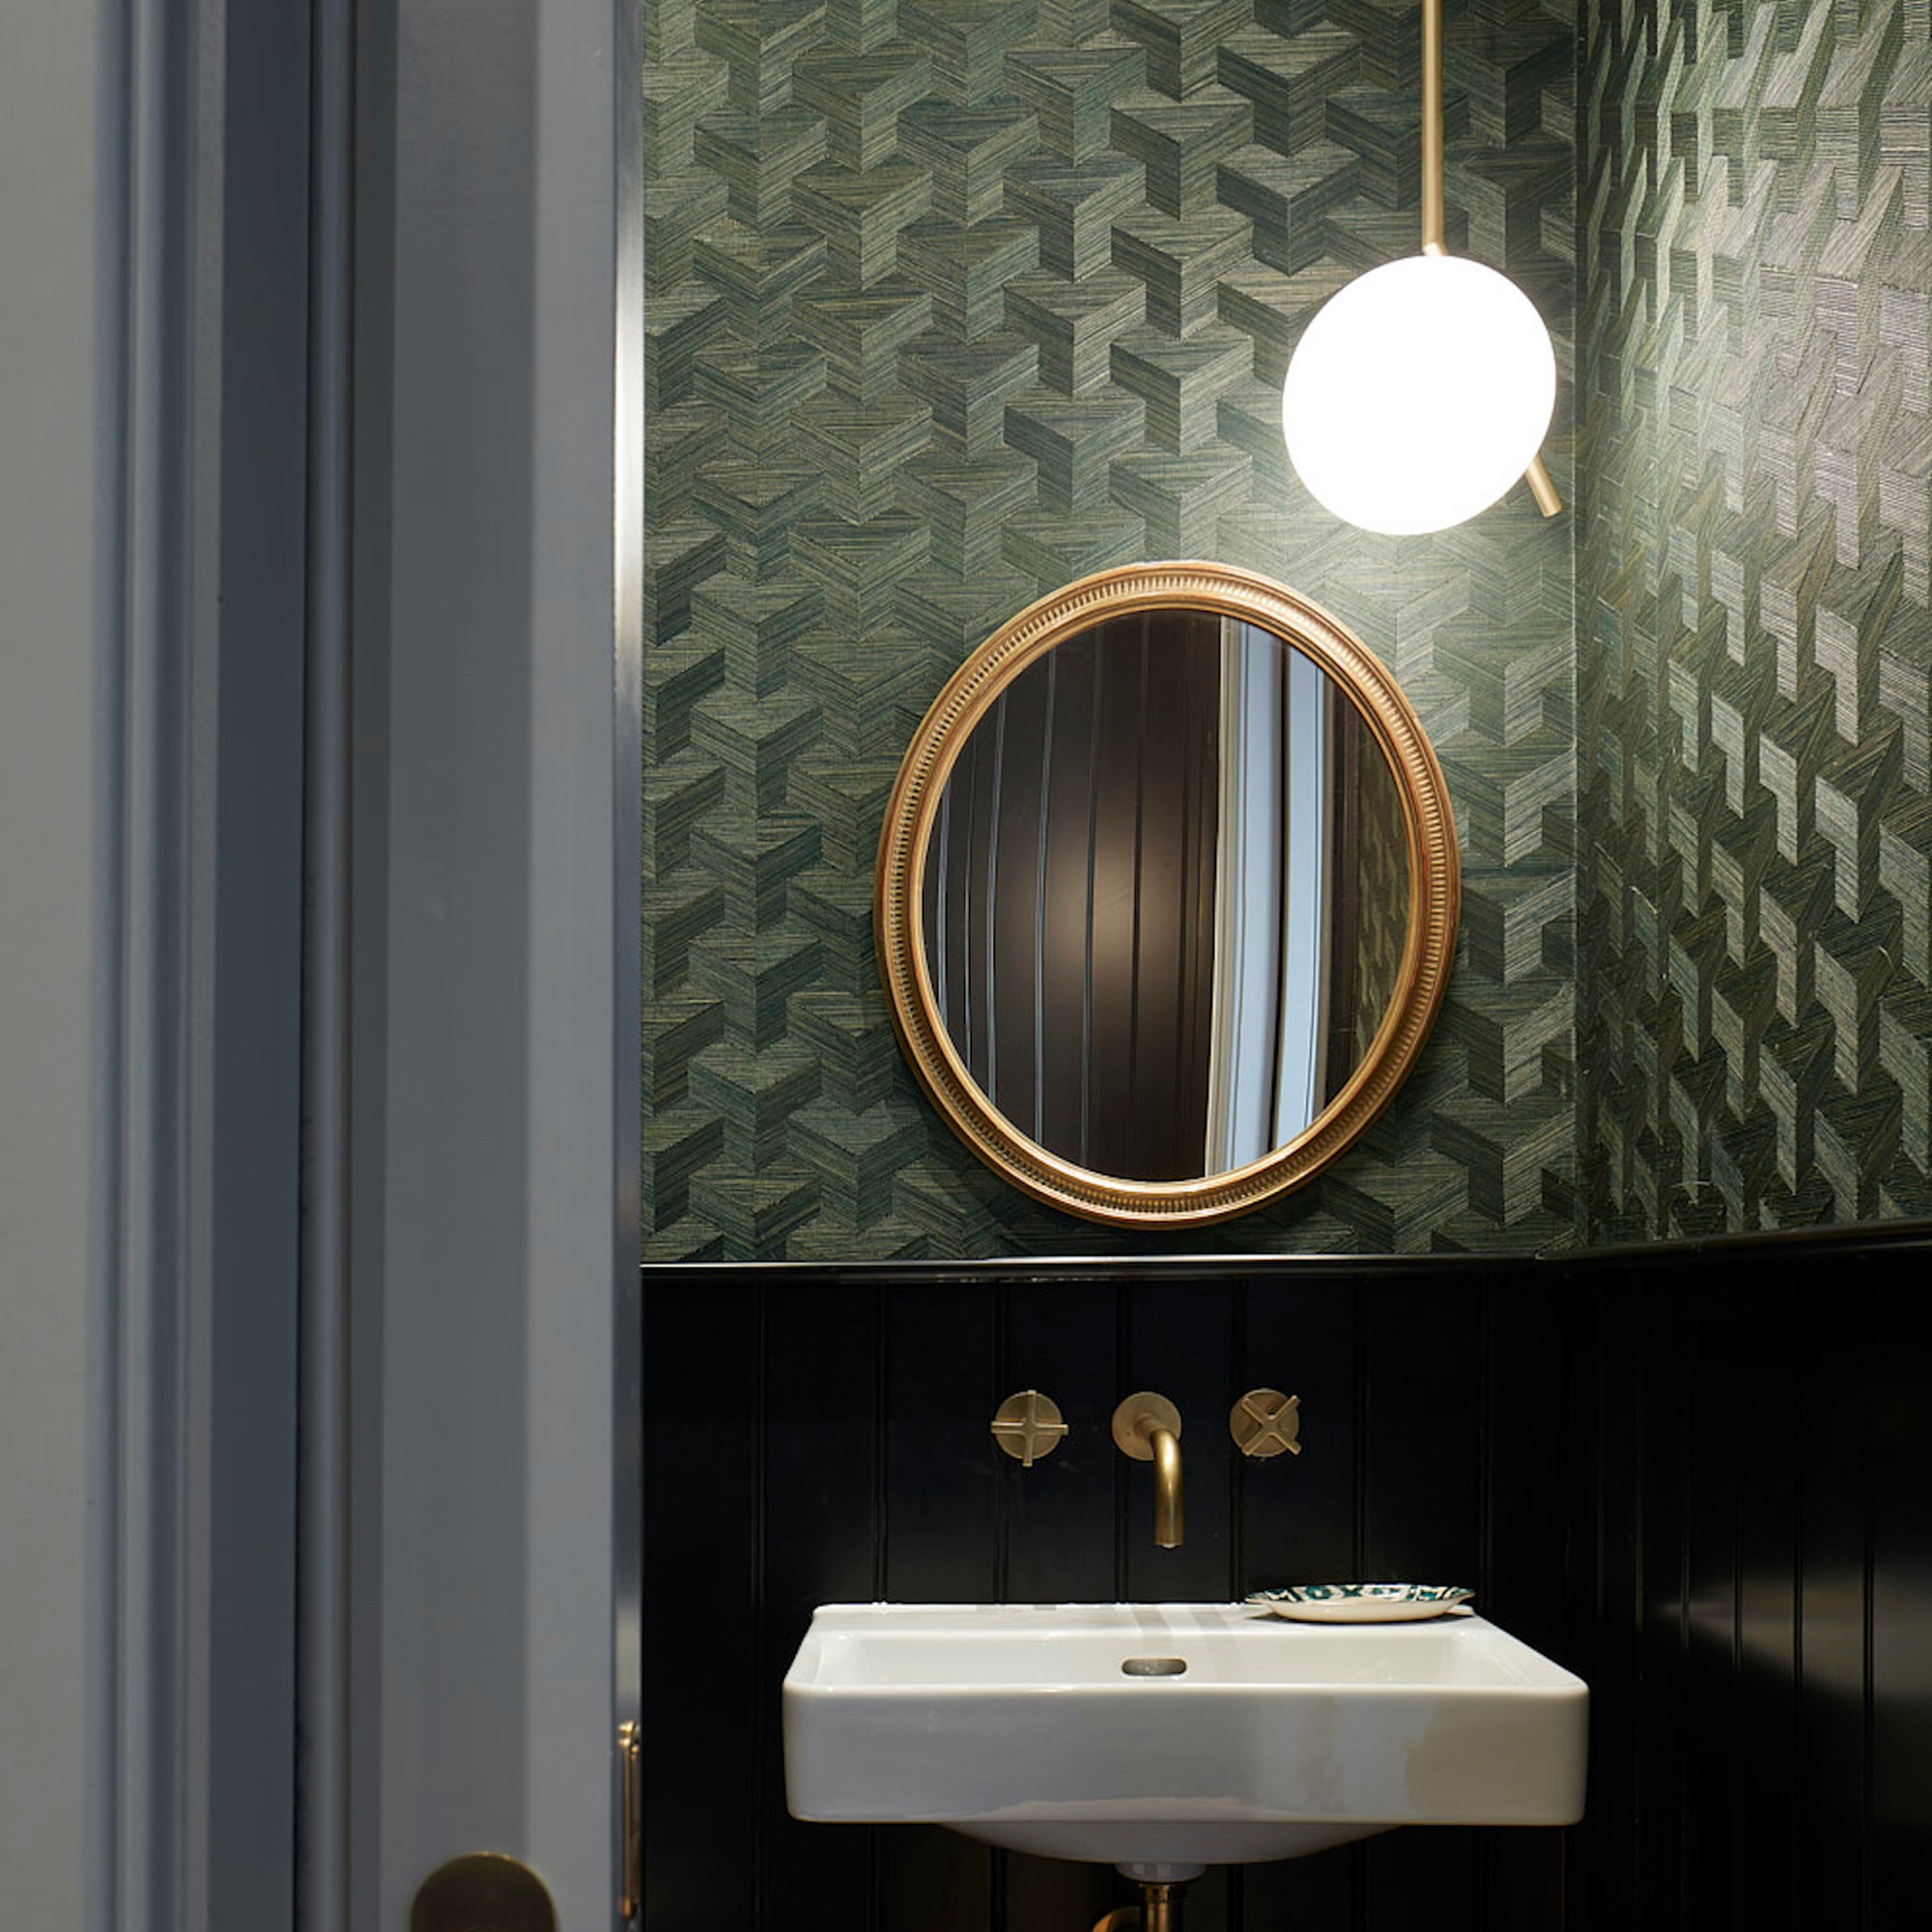 restroom-over-looking-glass-lighting-fixtures-tips-10-means-towards-bathe-exemplifies-in-illumination-10